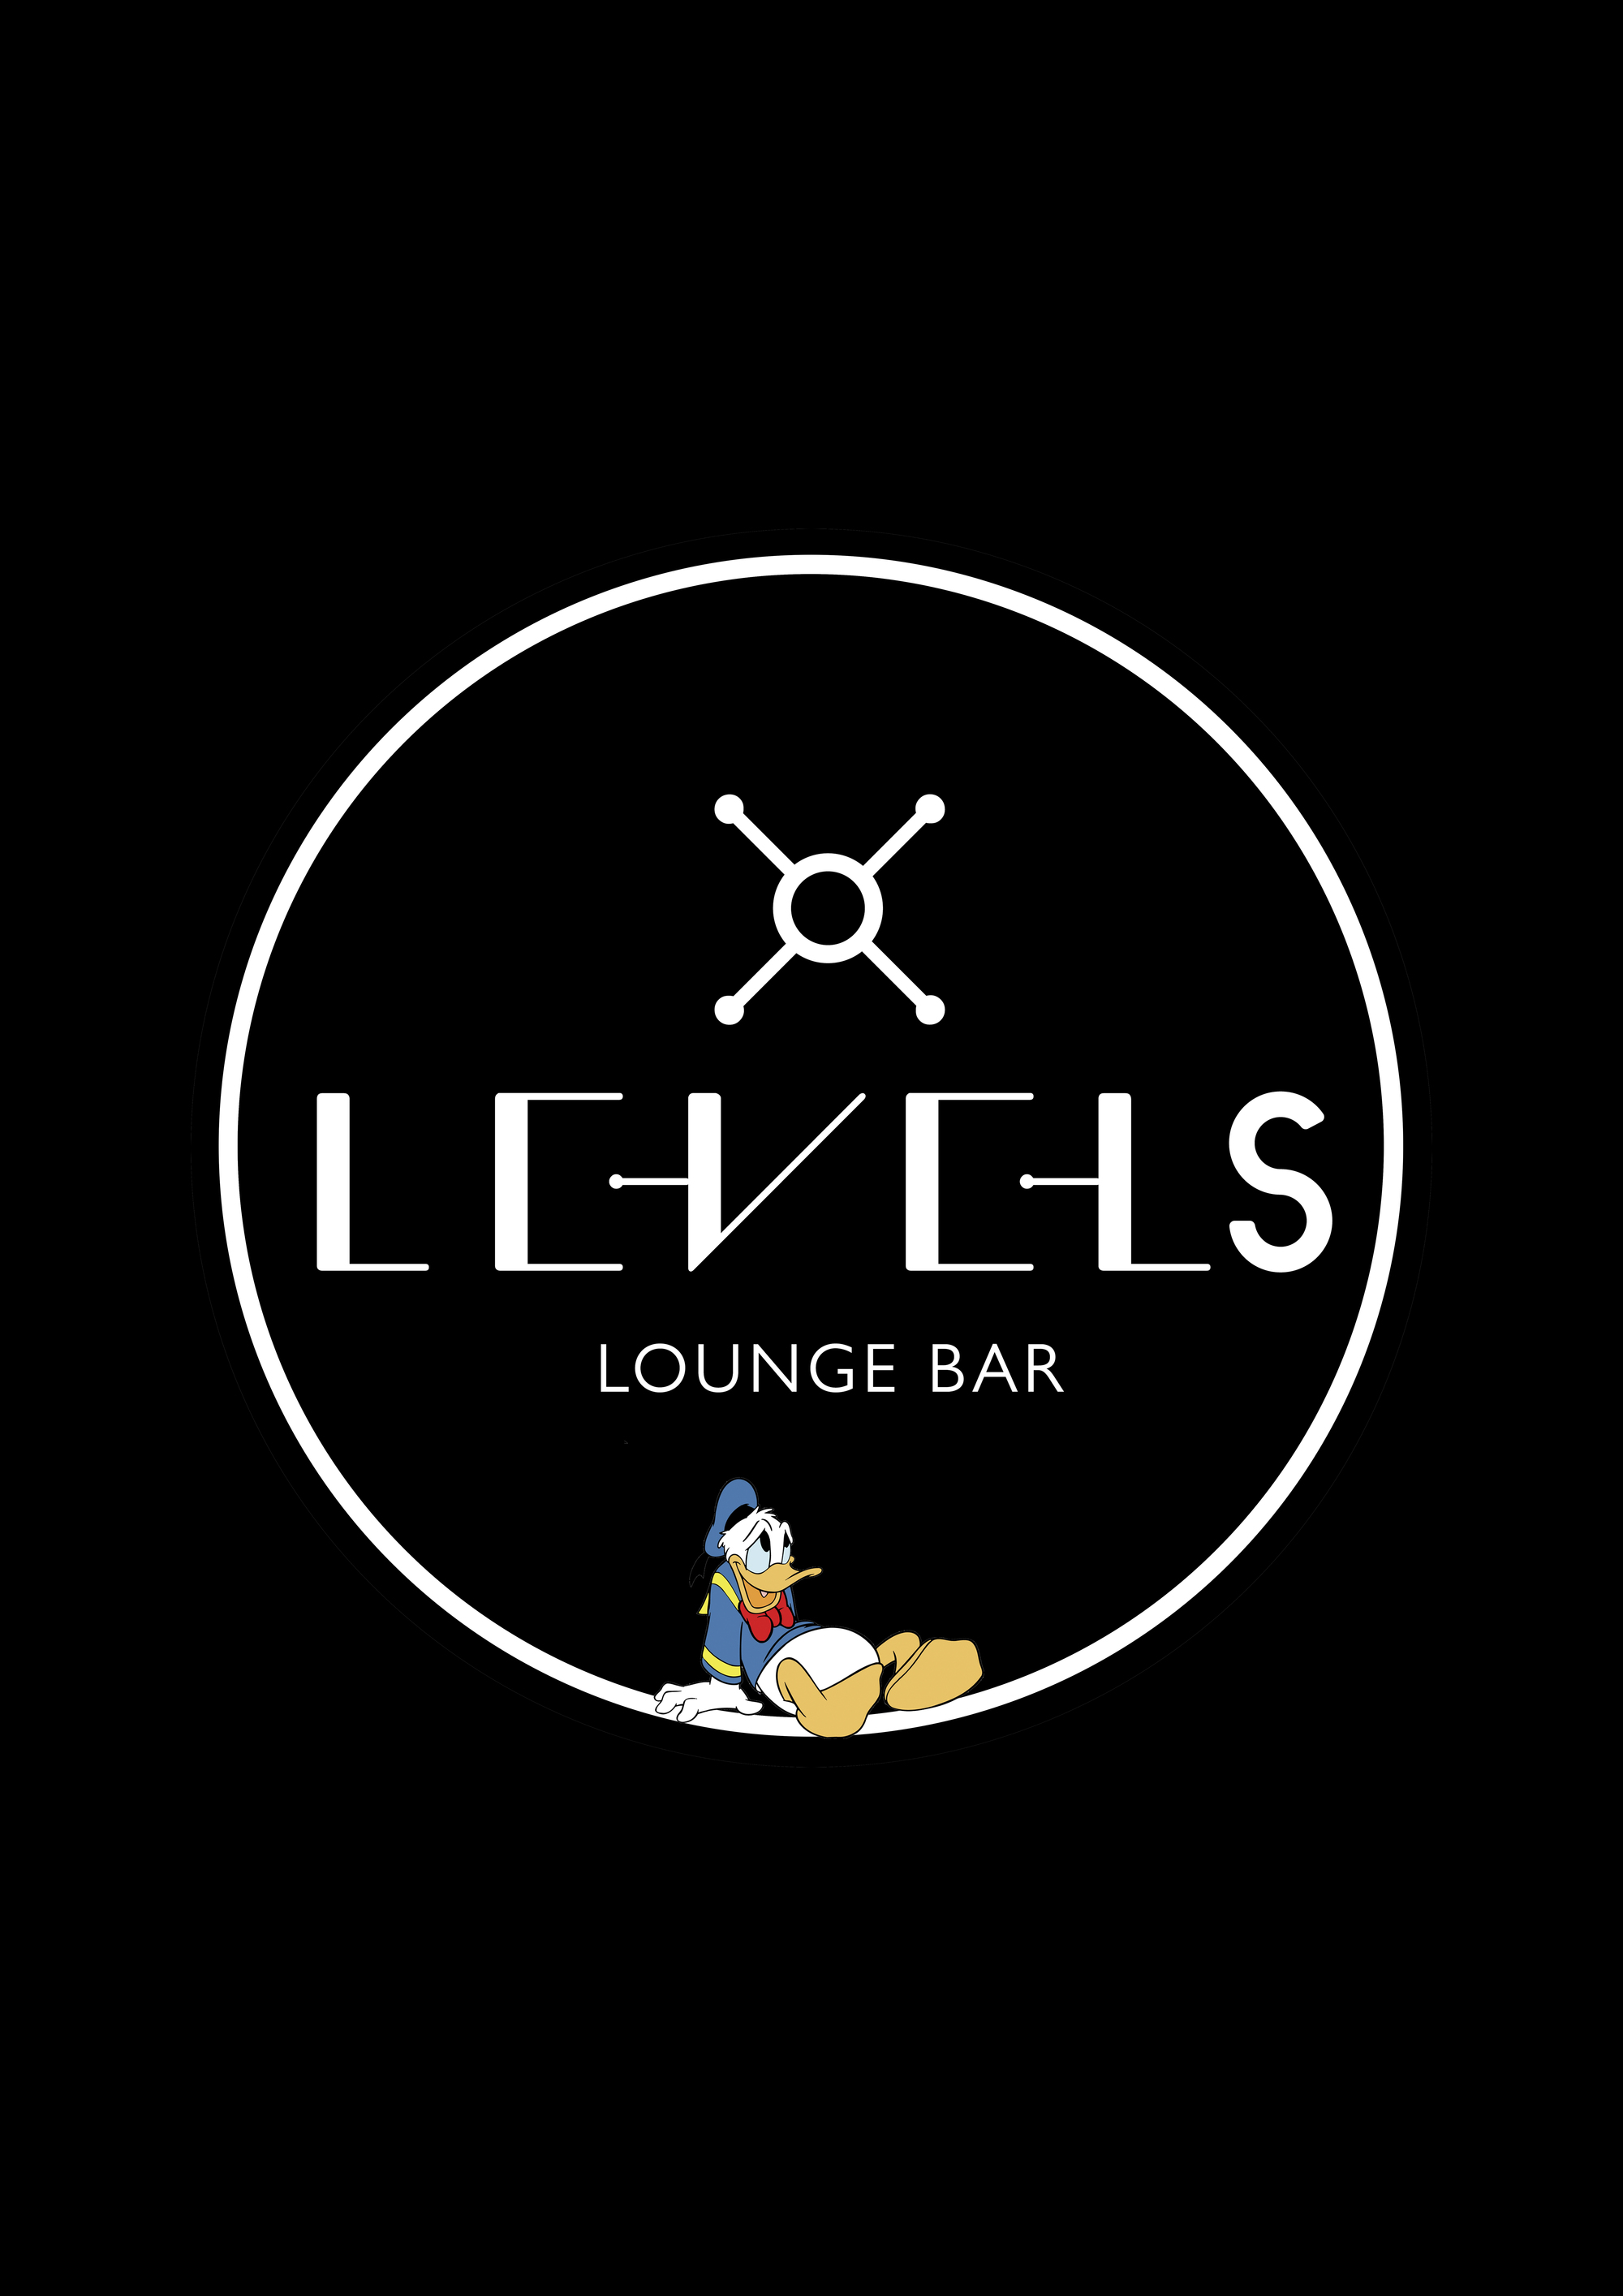 Levels lounge bar